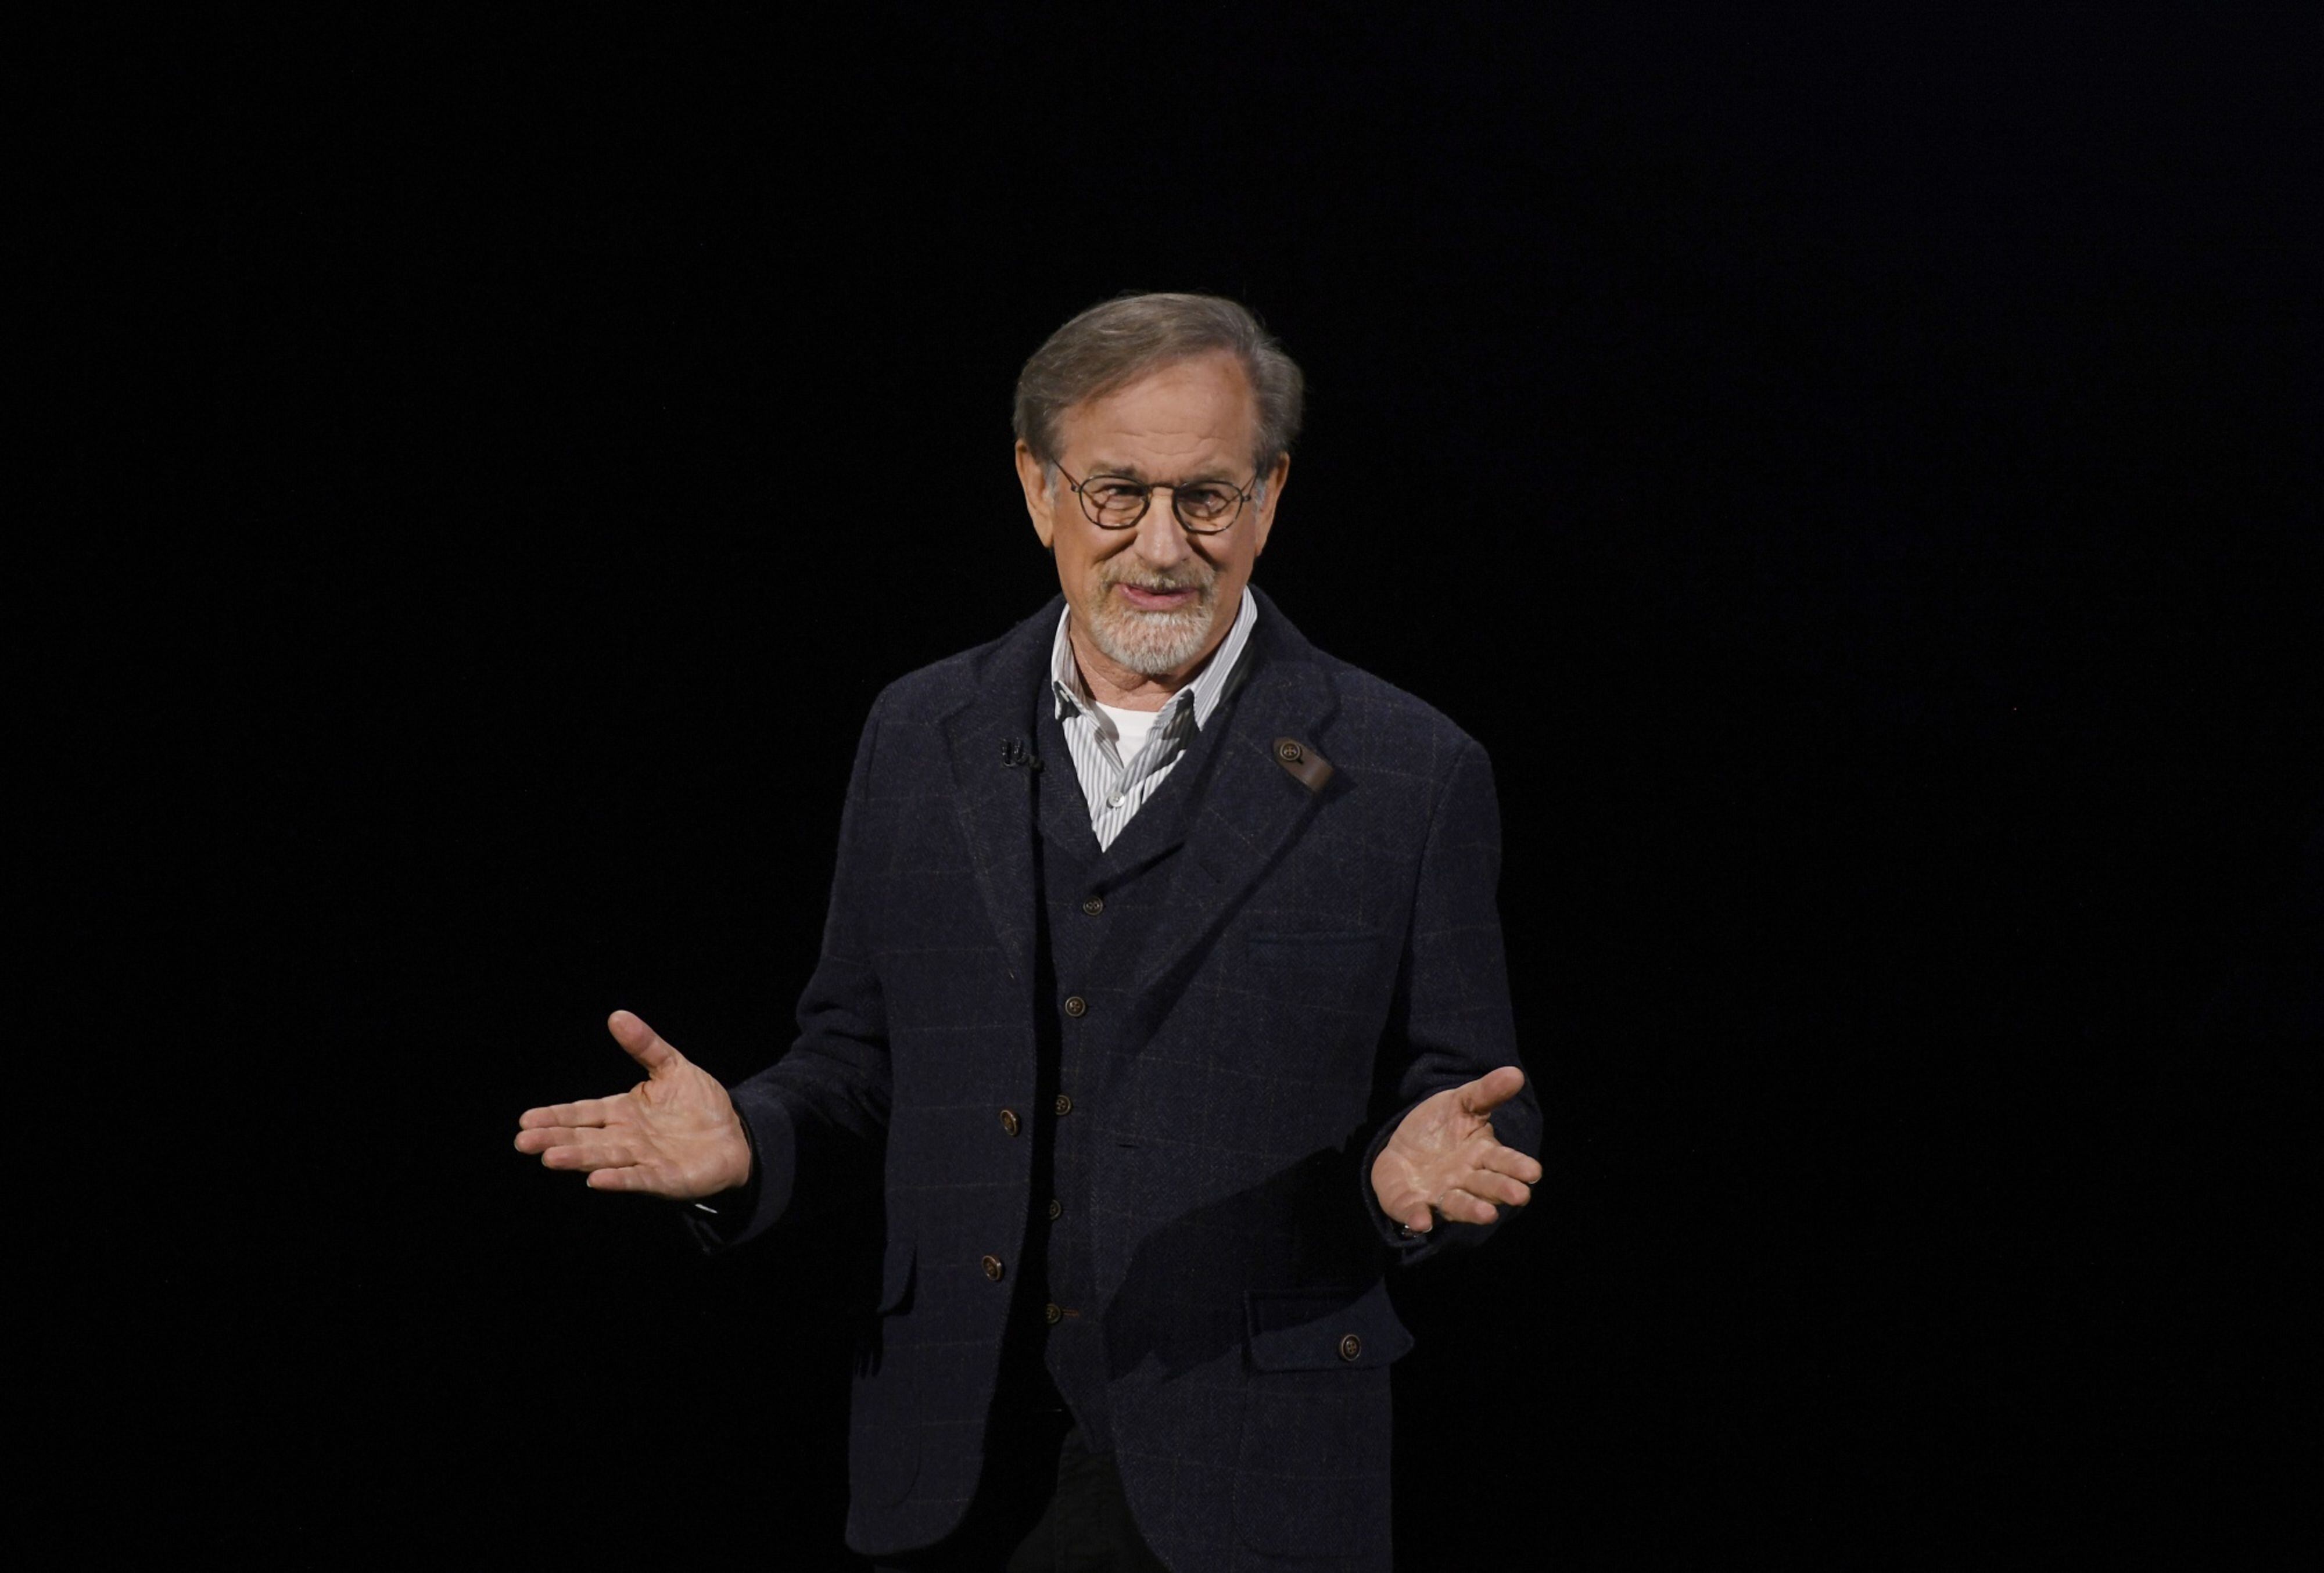 ¡Fichaje de lujo! Steven Spielberg firma acuerdo con Netflix para producir varias películas